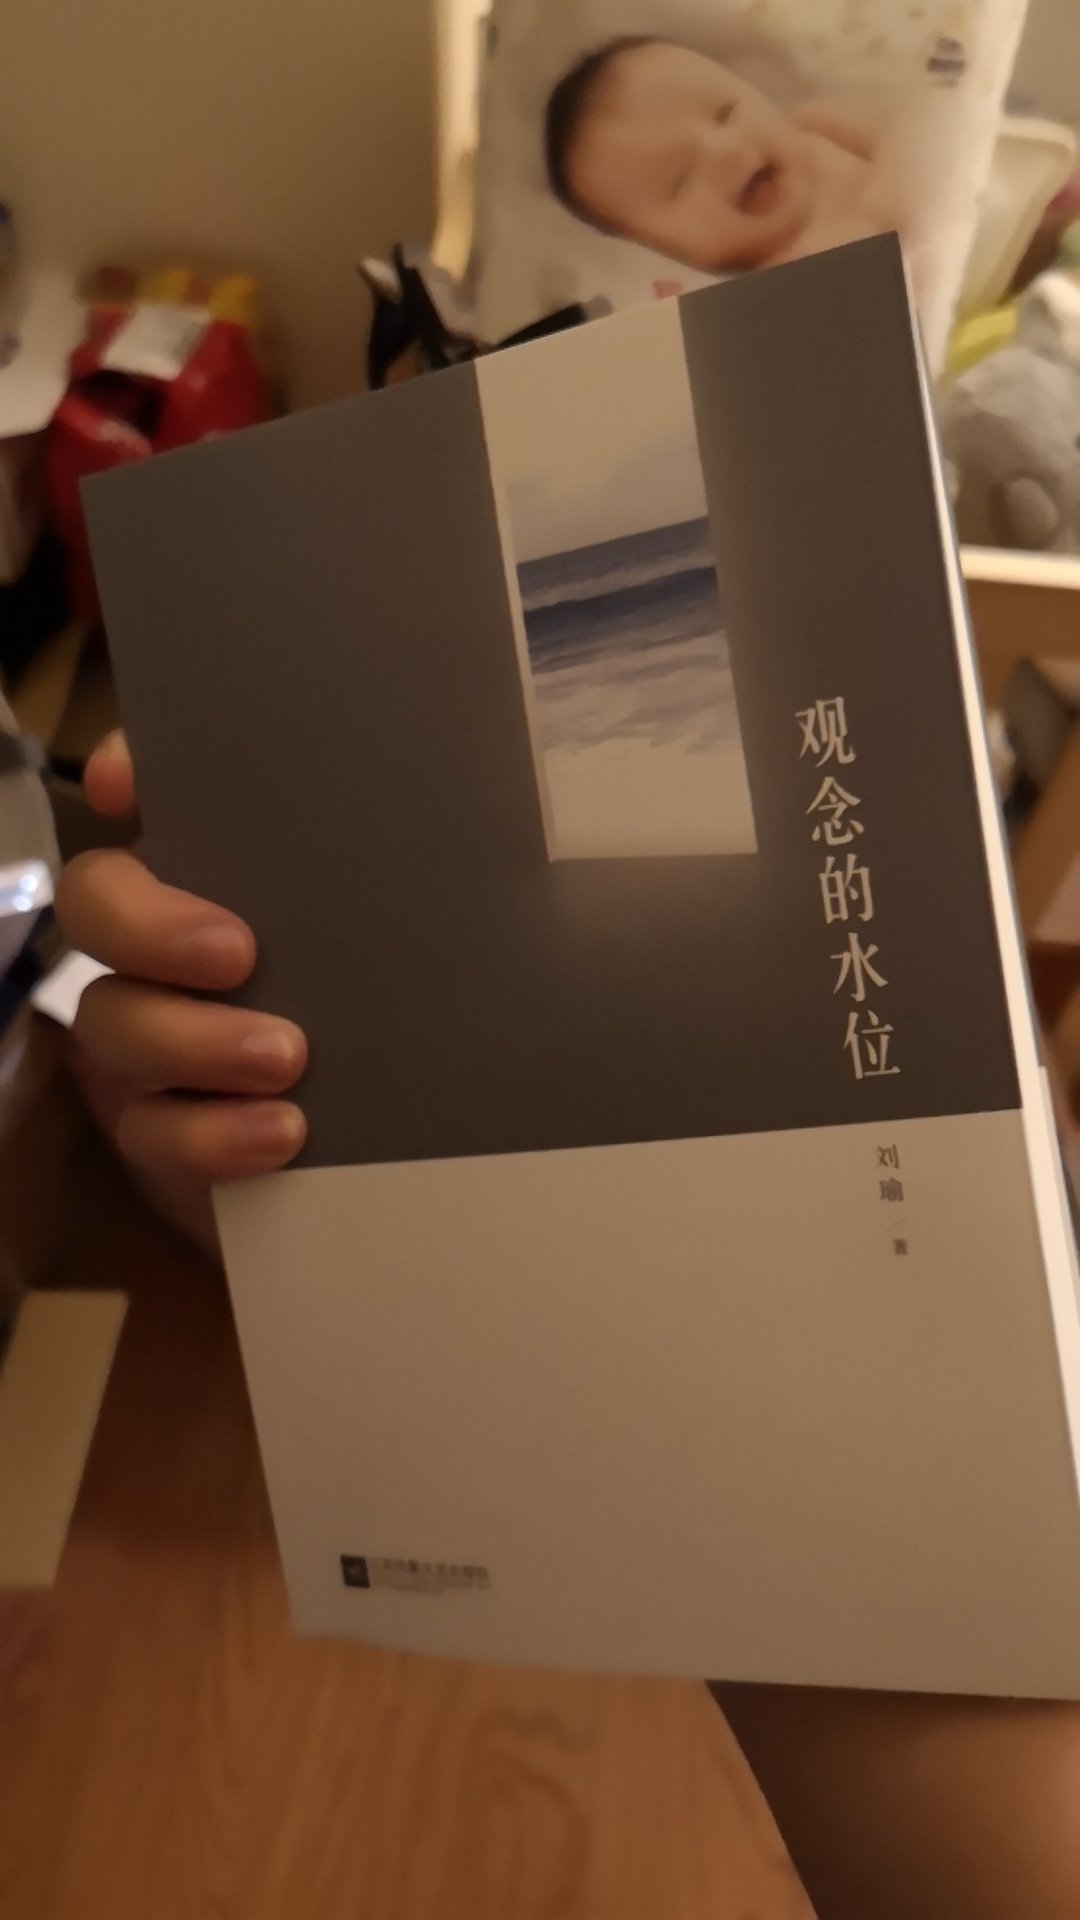 喜欢刘瑜的风格，买了本她的书回来看看。